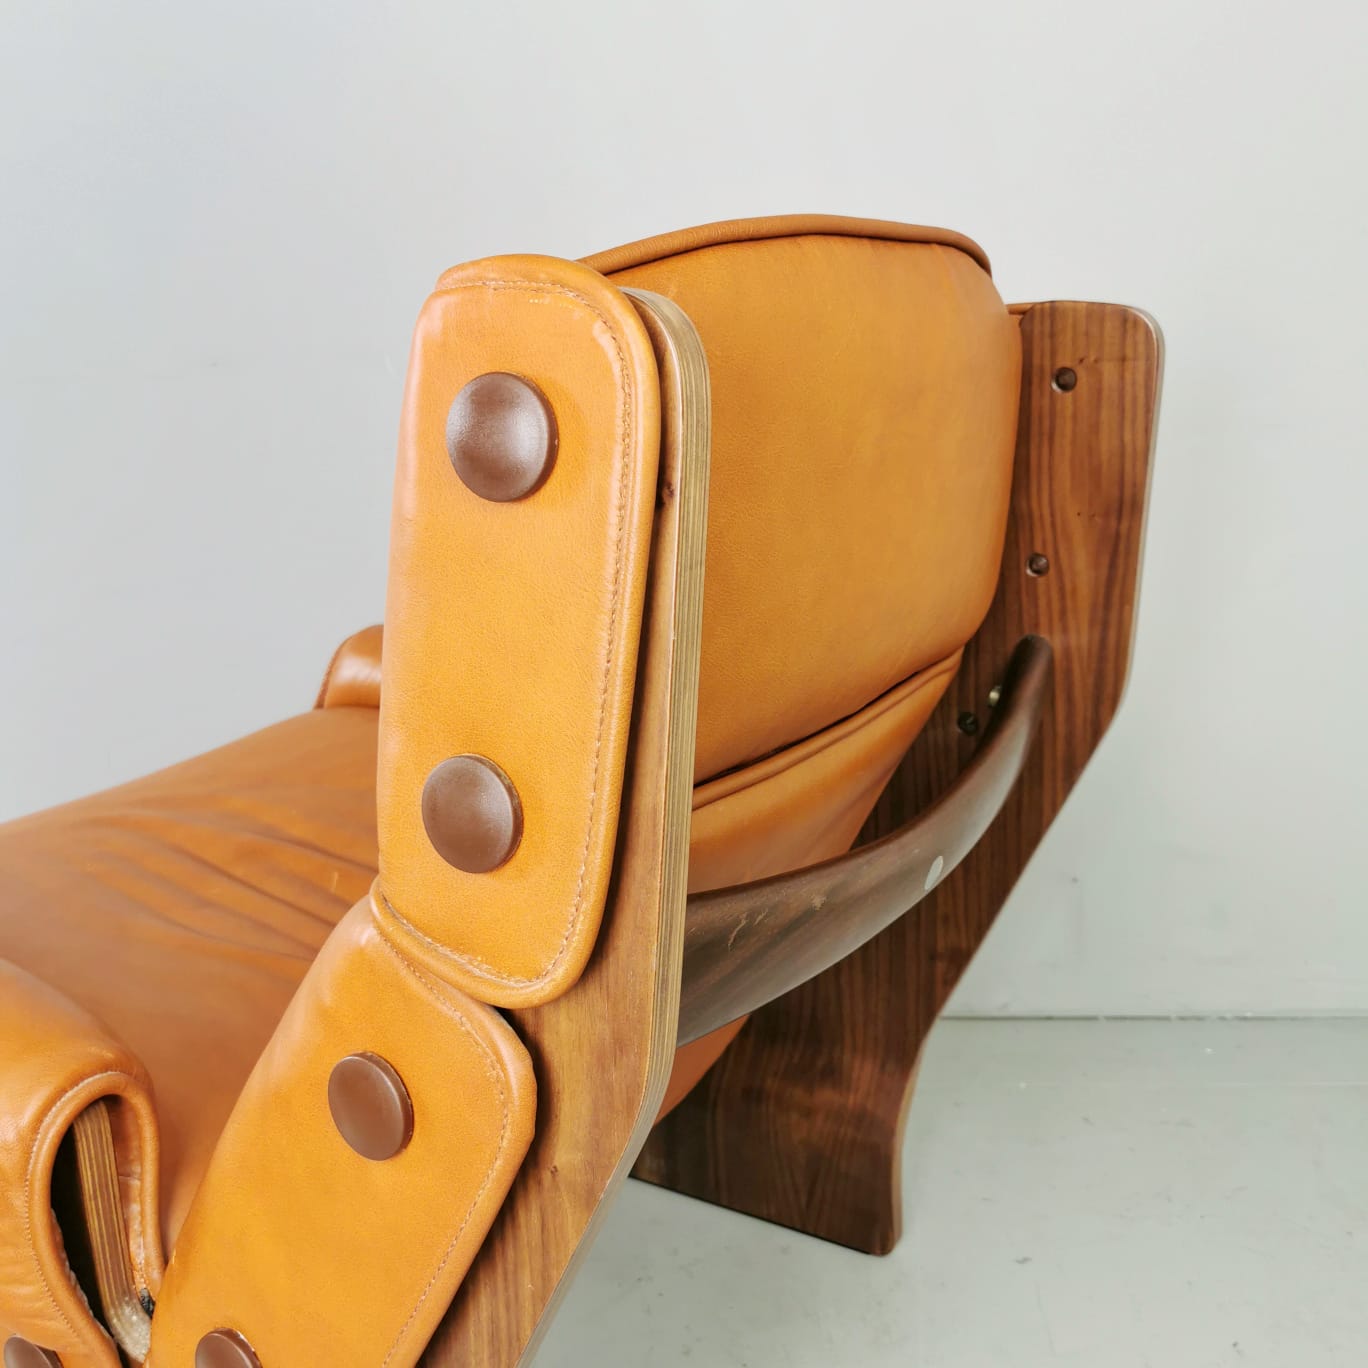 Canada armchair, Osvaldo Borsani for Tecno 1960's